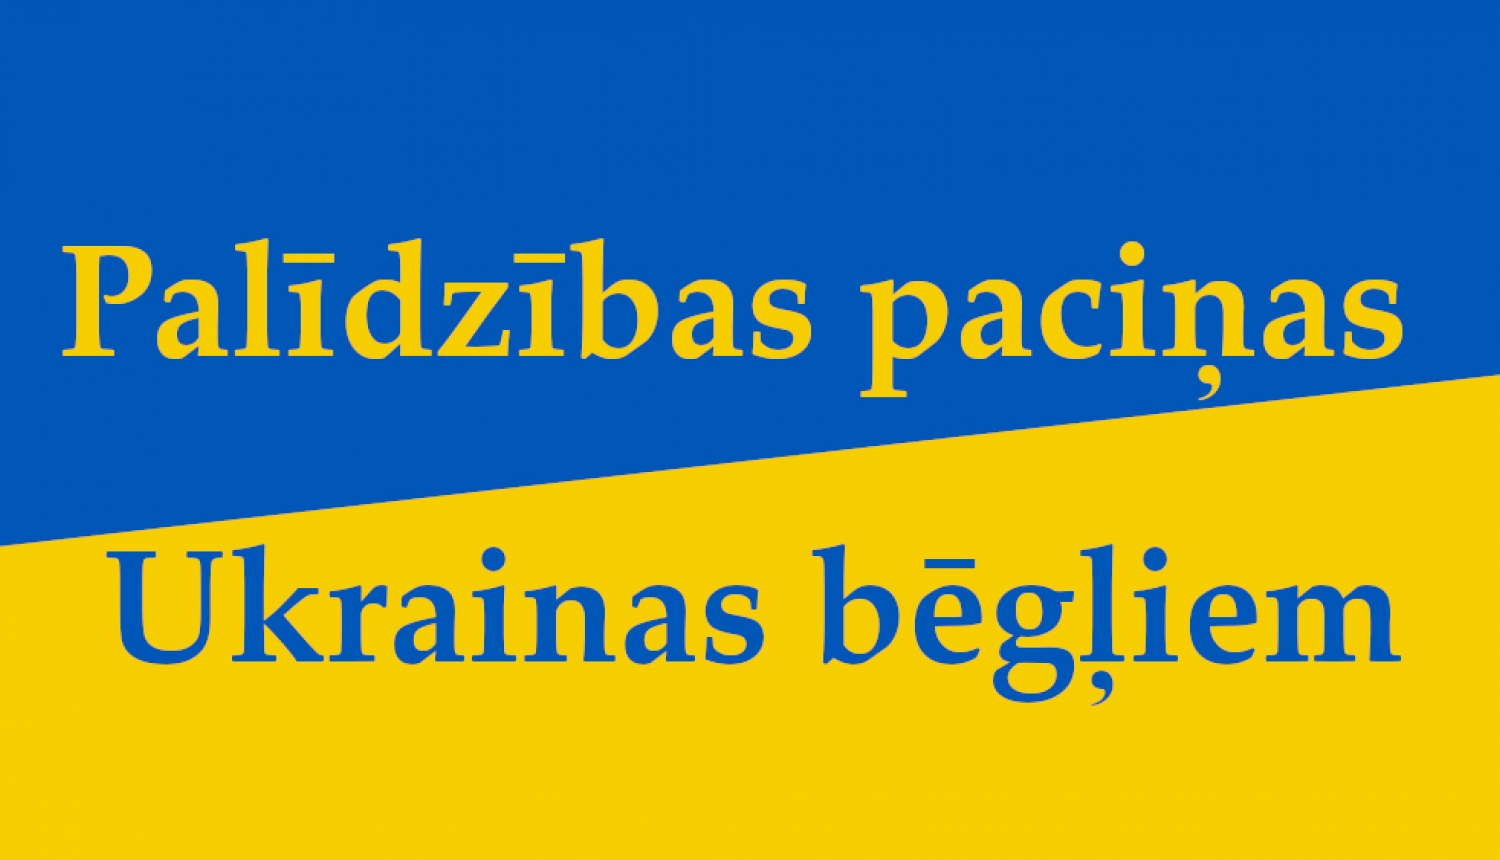 Ukrainas karoga krāsā uzraksts par palīdzības paciņām Ukrainas bēgļiem